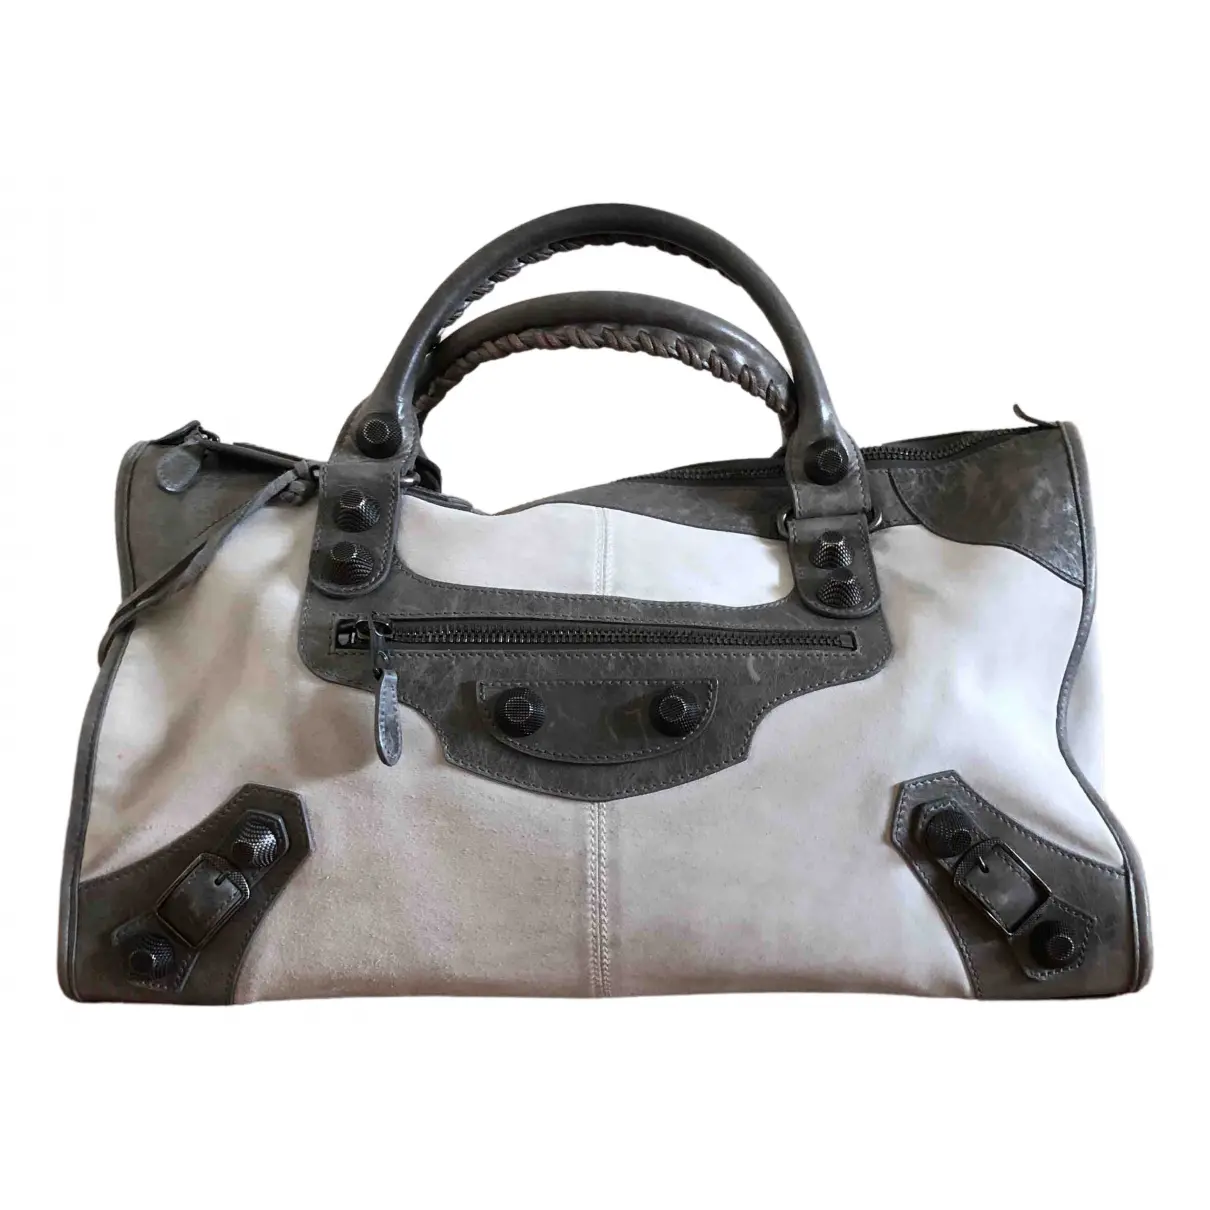 Work handbag Balenciaga